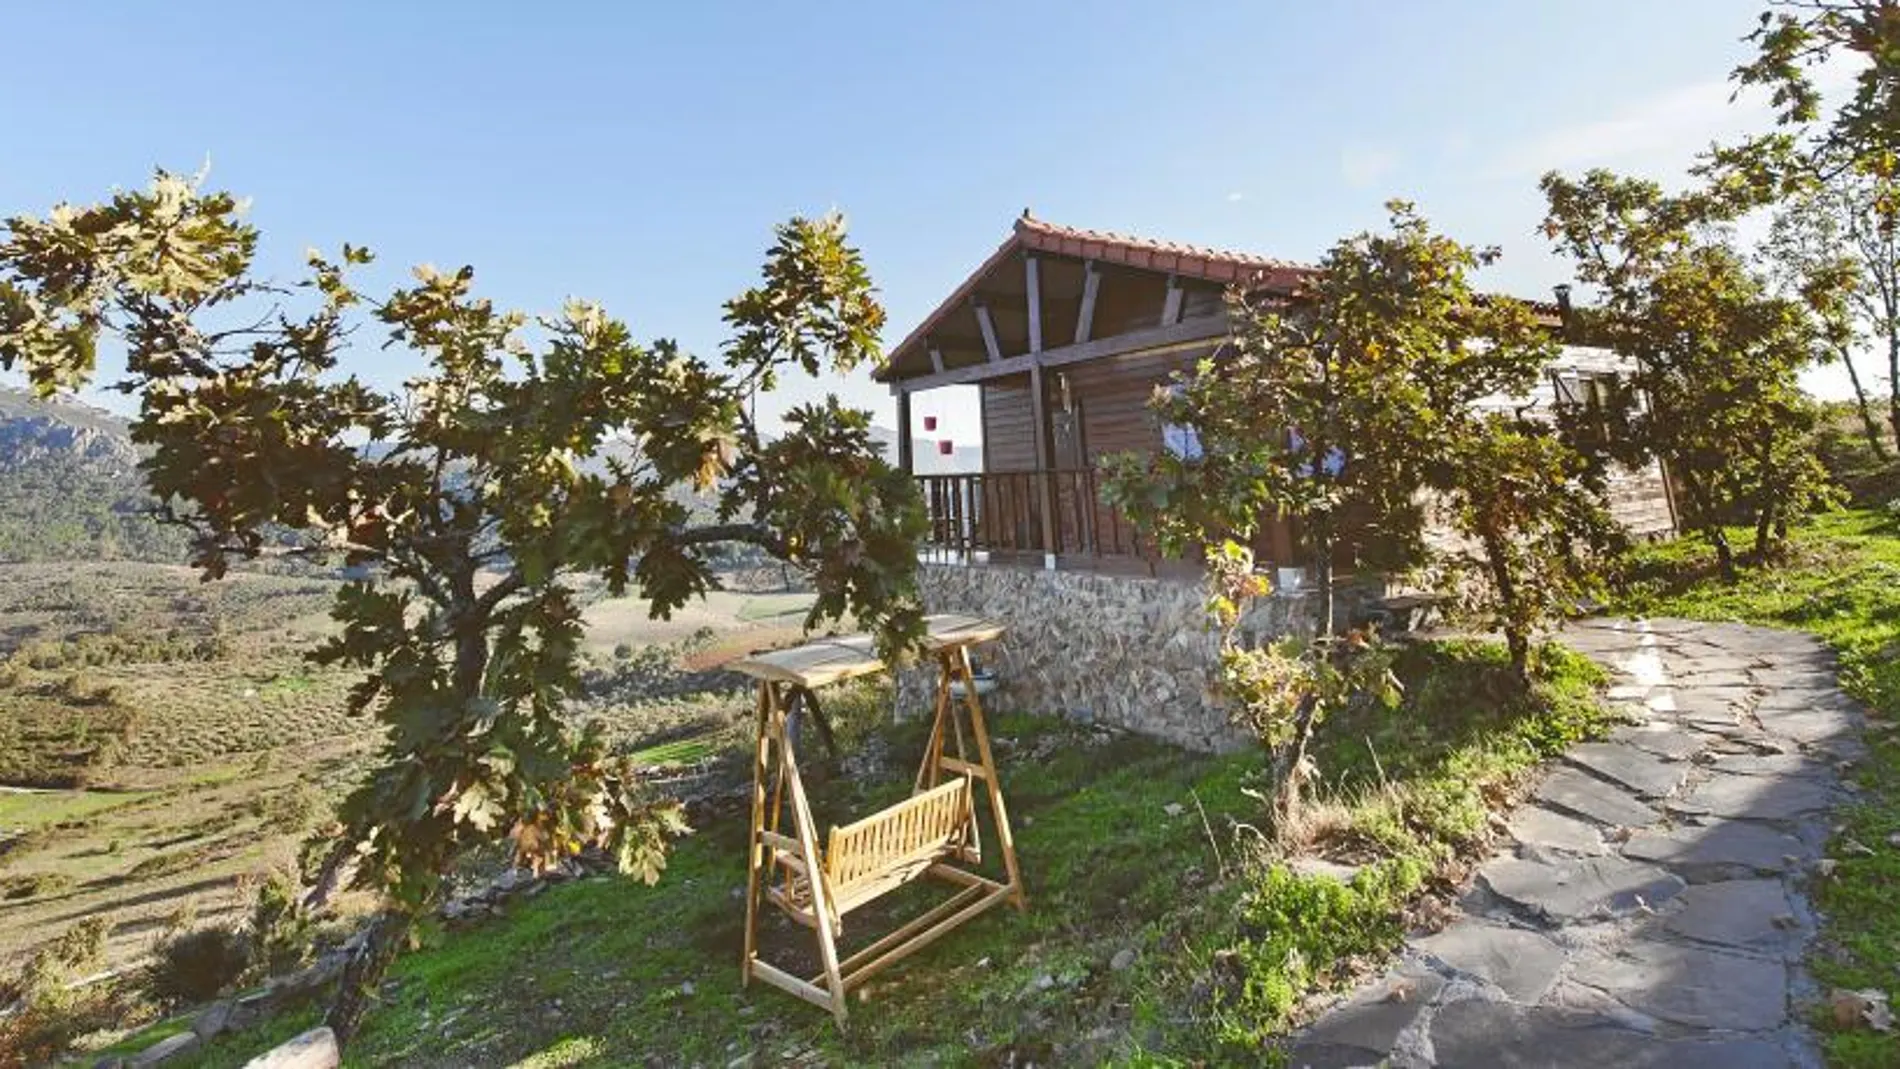 La Brizna está formado por casitas de madera en pleno Geoparque Villuercas